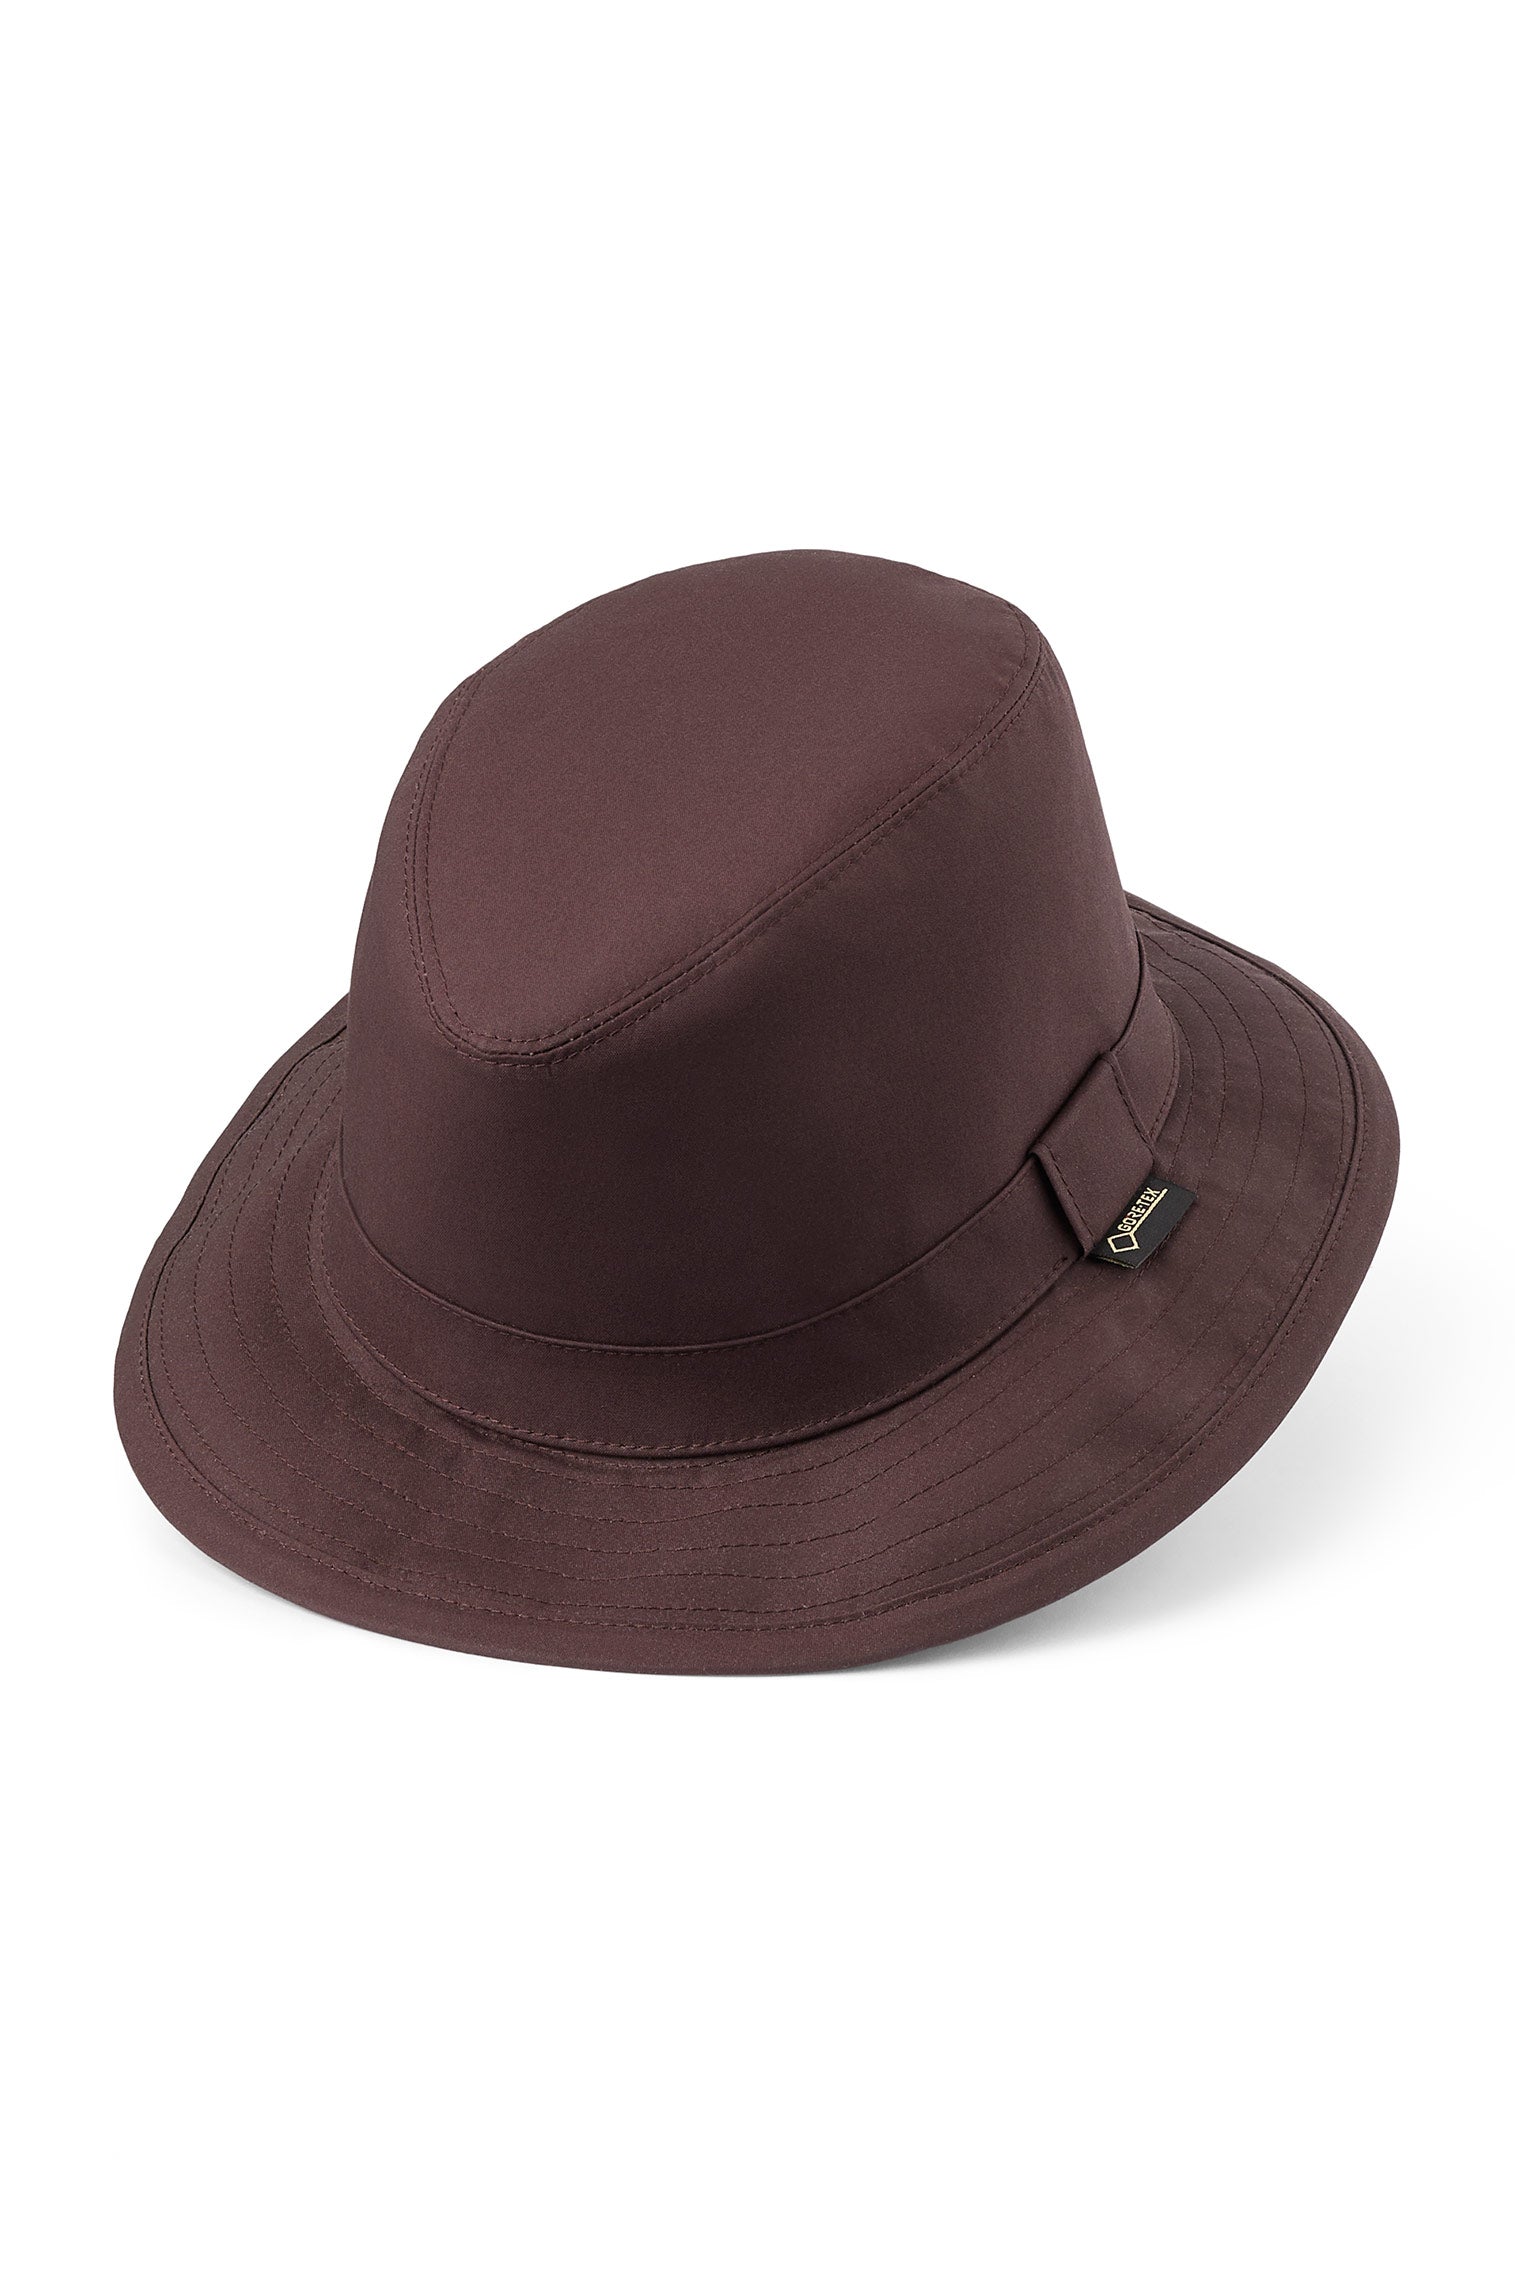 Tay GORE-TEX Hat - Bucket Hats - Lock & Co. Hatters London UK